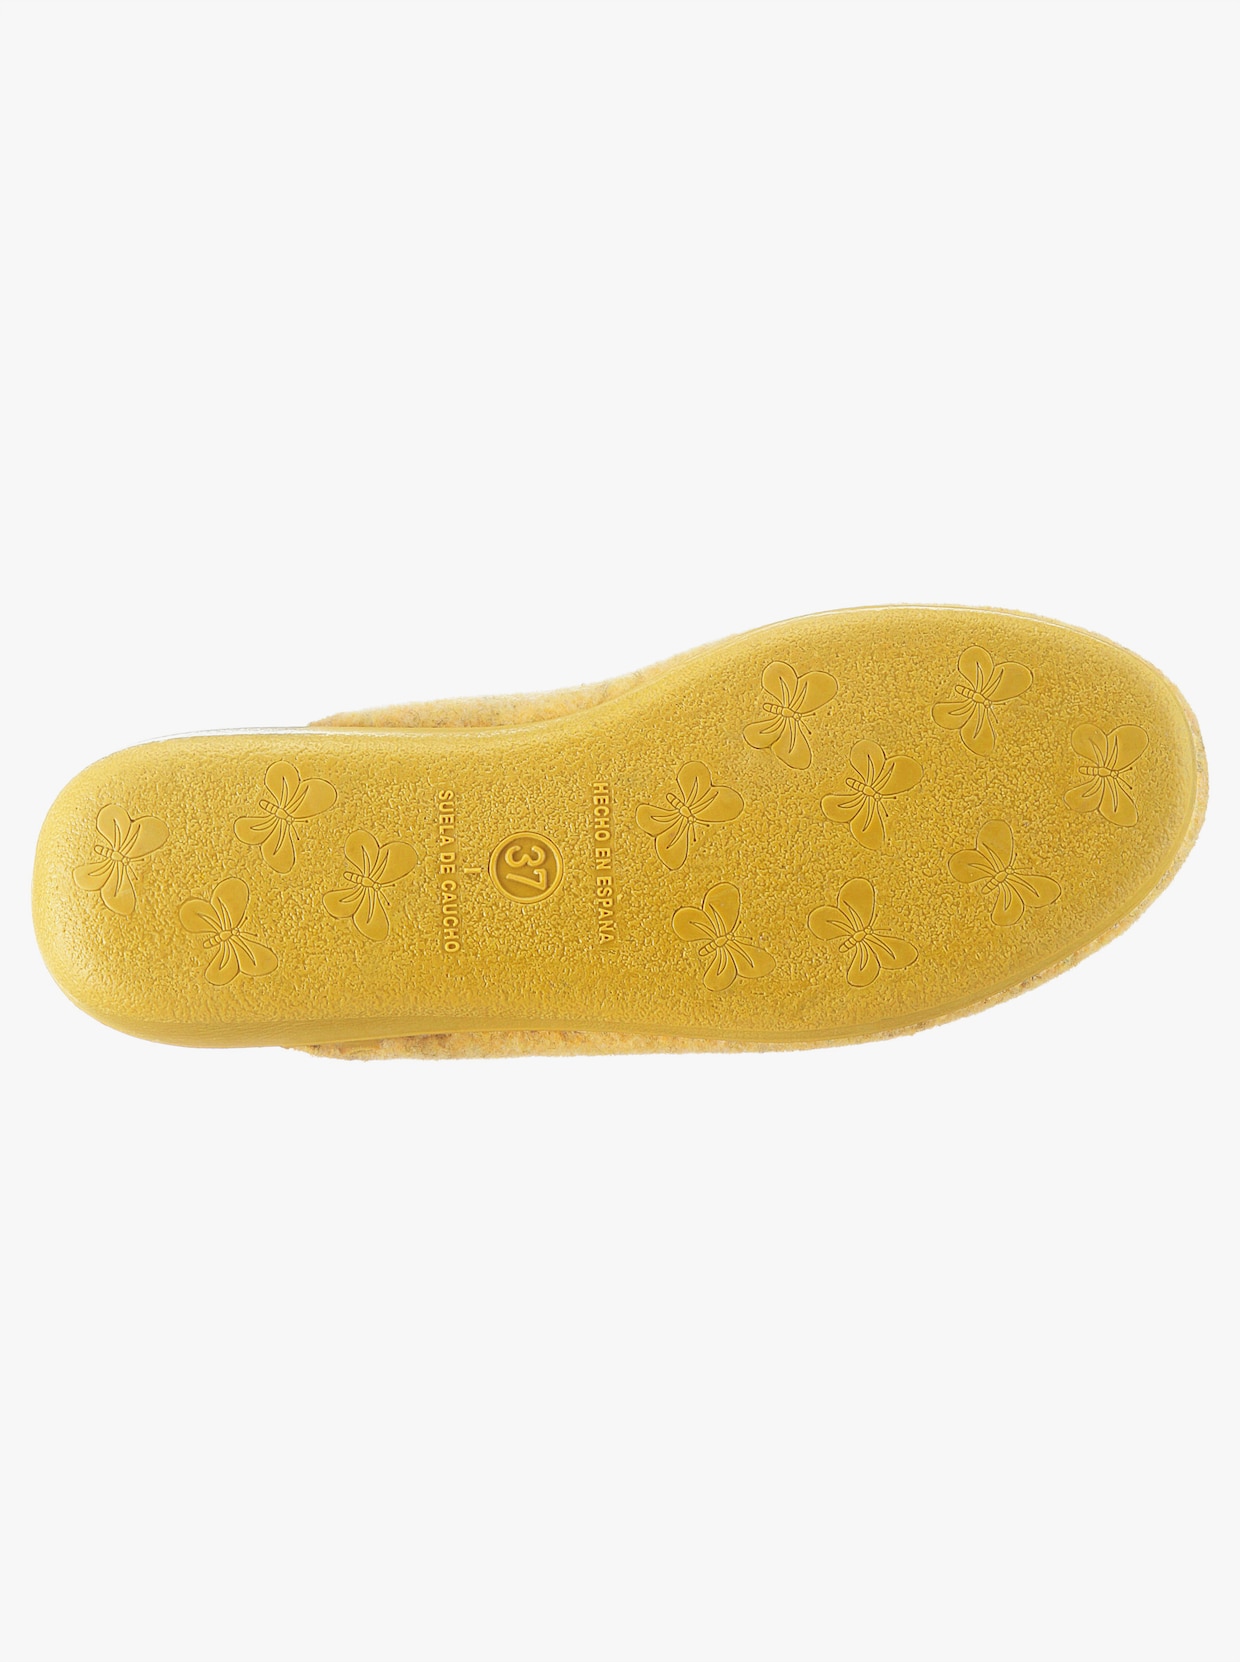 Pantofle - žlutá